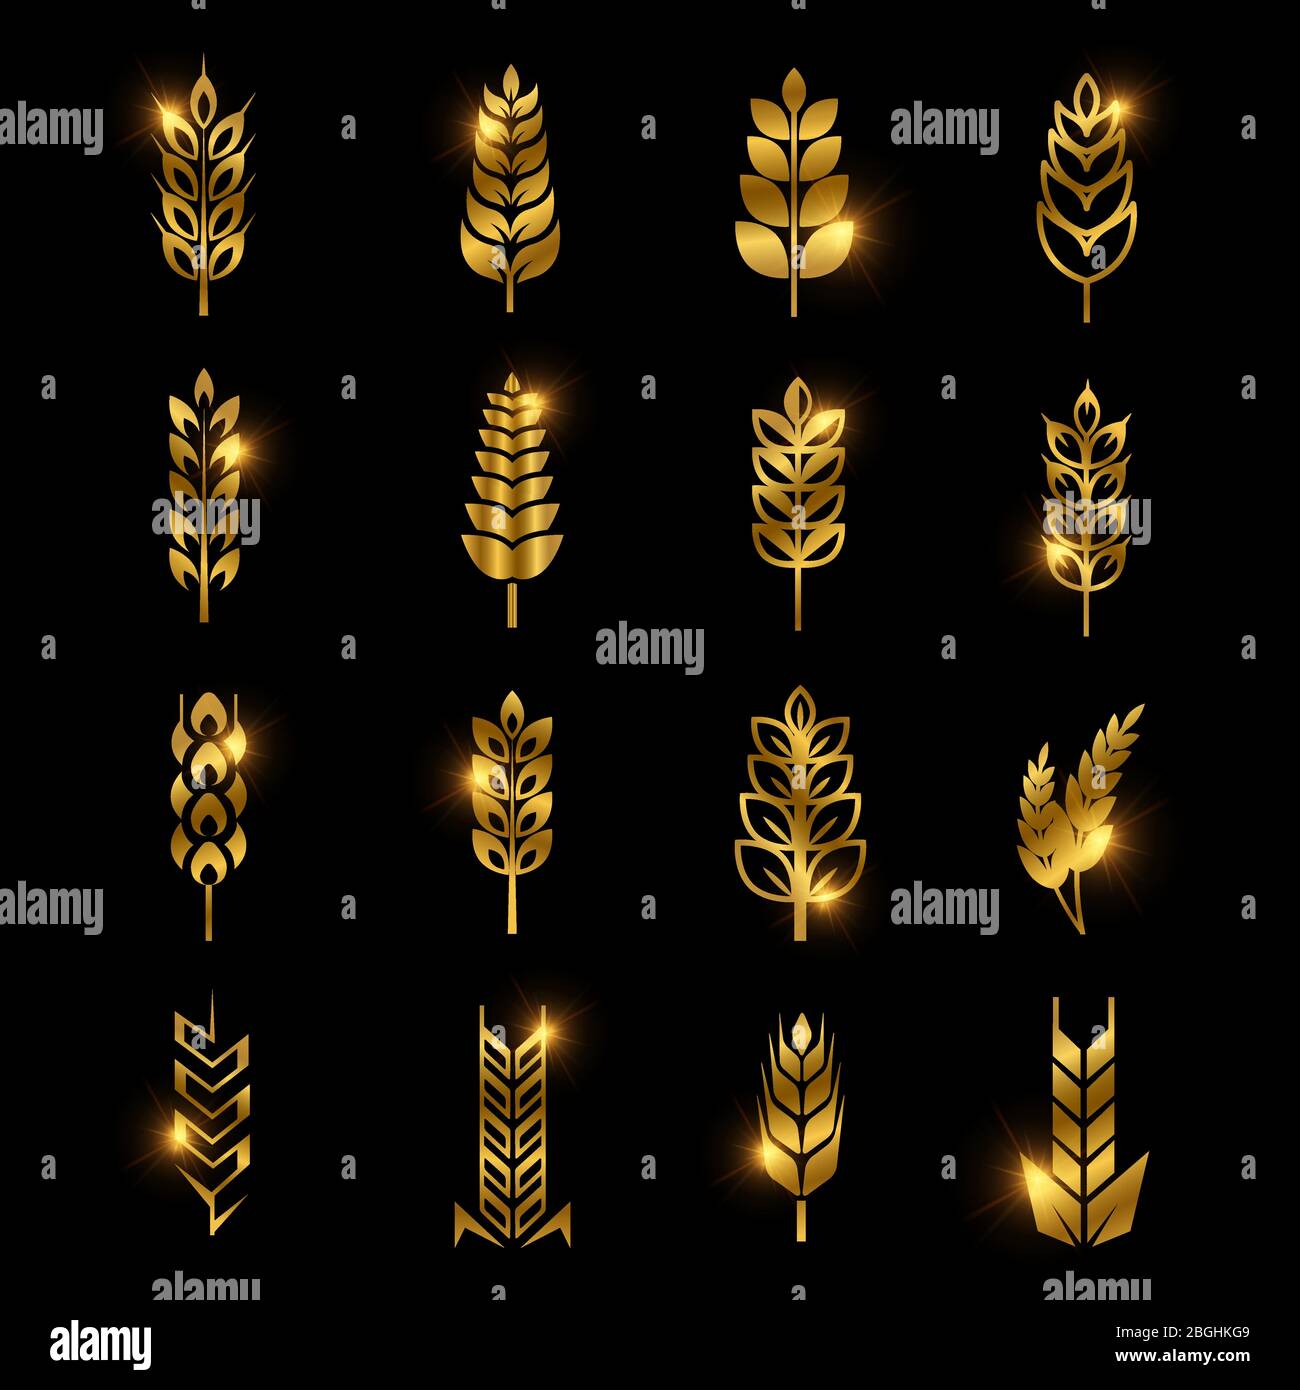 Goldene Weizenohren Vektor-Symbole auf schwarzem Hintergrund isoliert. Hafer und Gerste, goldene Landwirtschaft Ernährung Illustration Stock Vektor